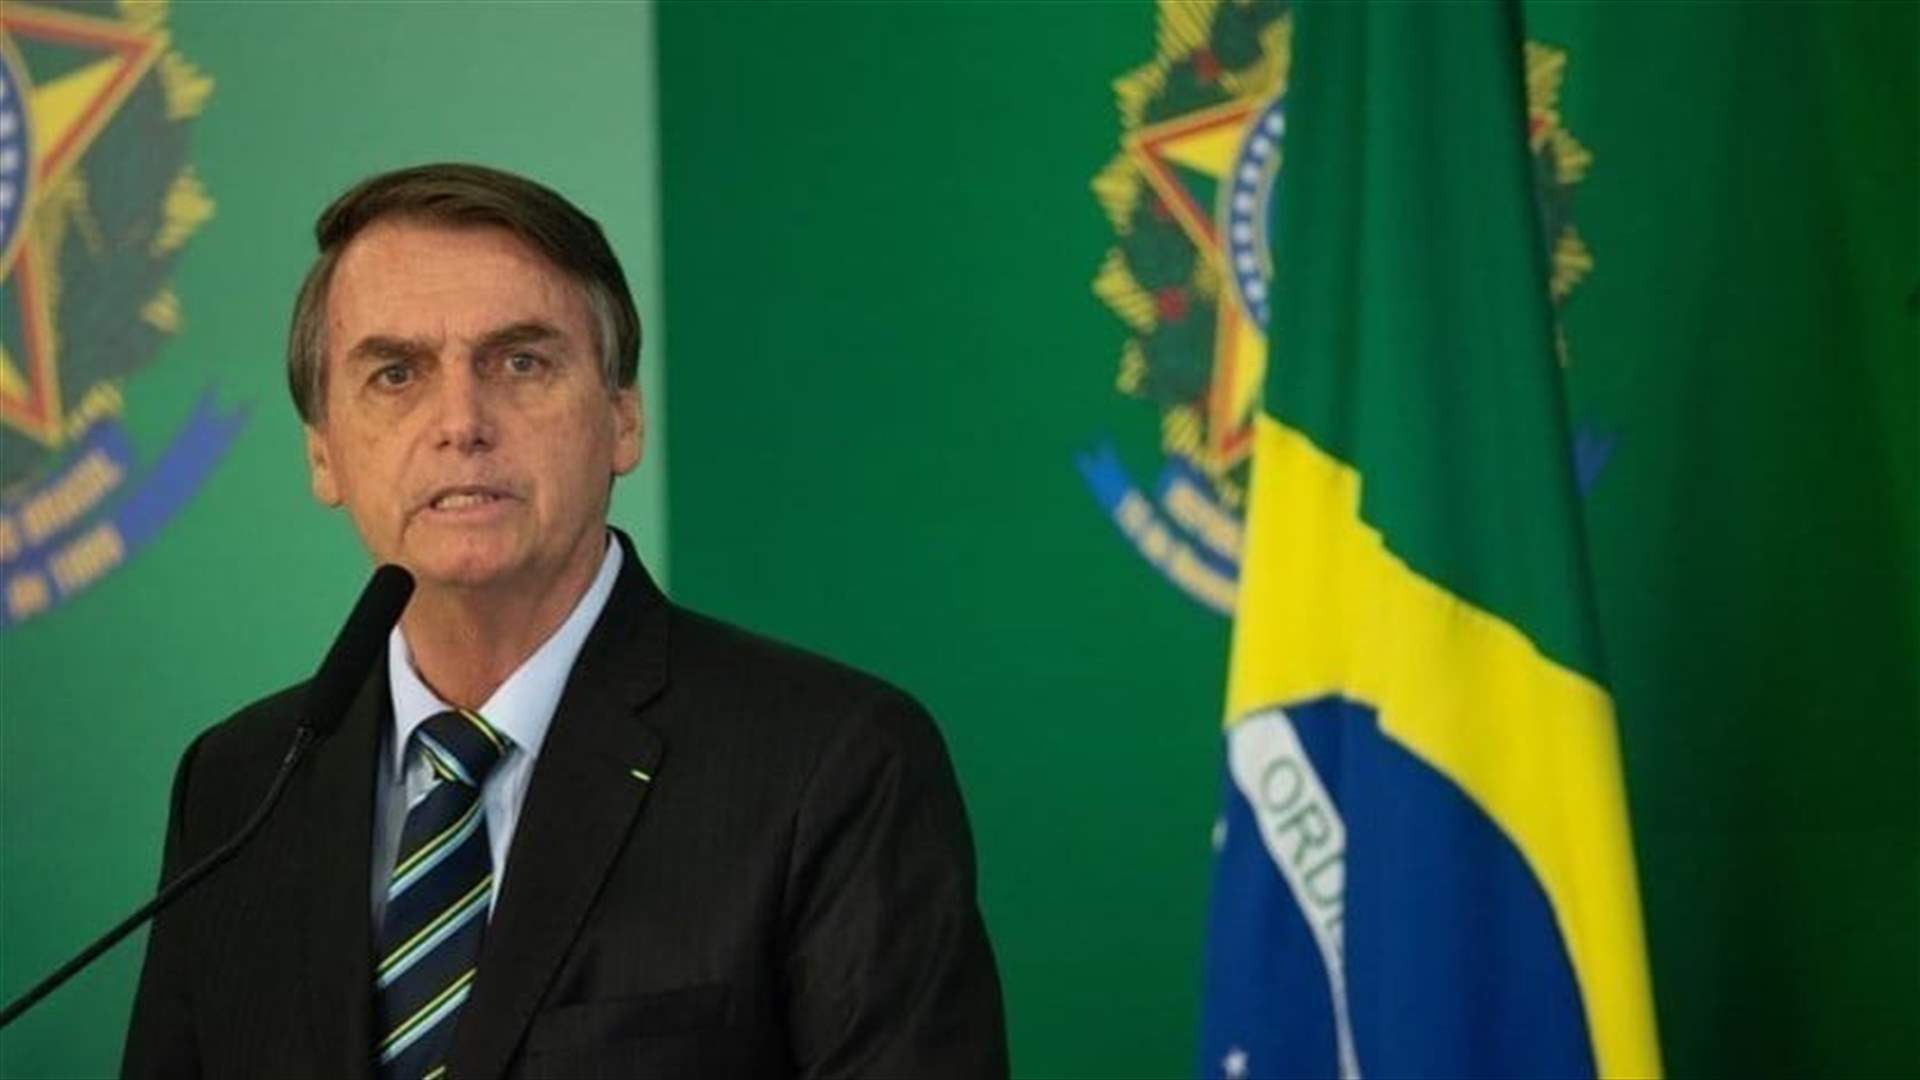 المحكمة العليا البرازيلية تُدرج بولسونارو في تحقيقها المتعلق بأعمال الشغب